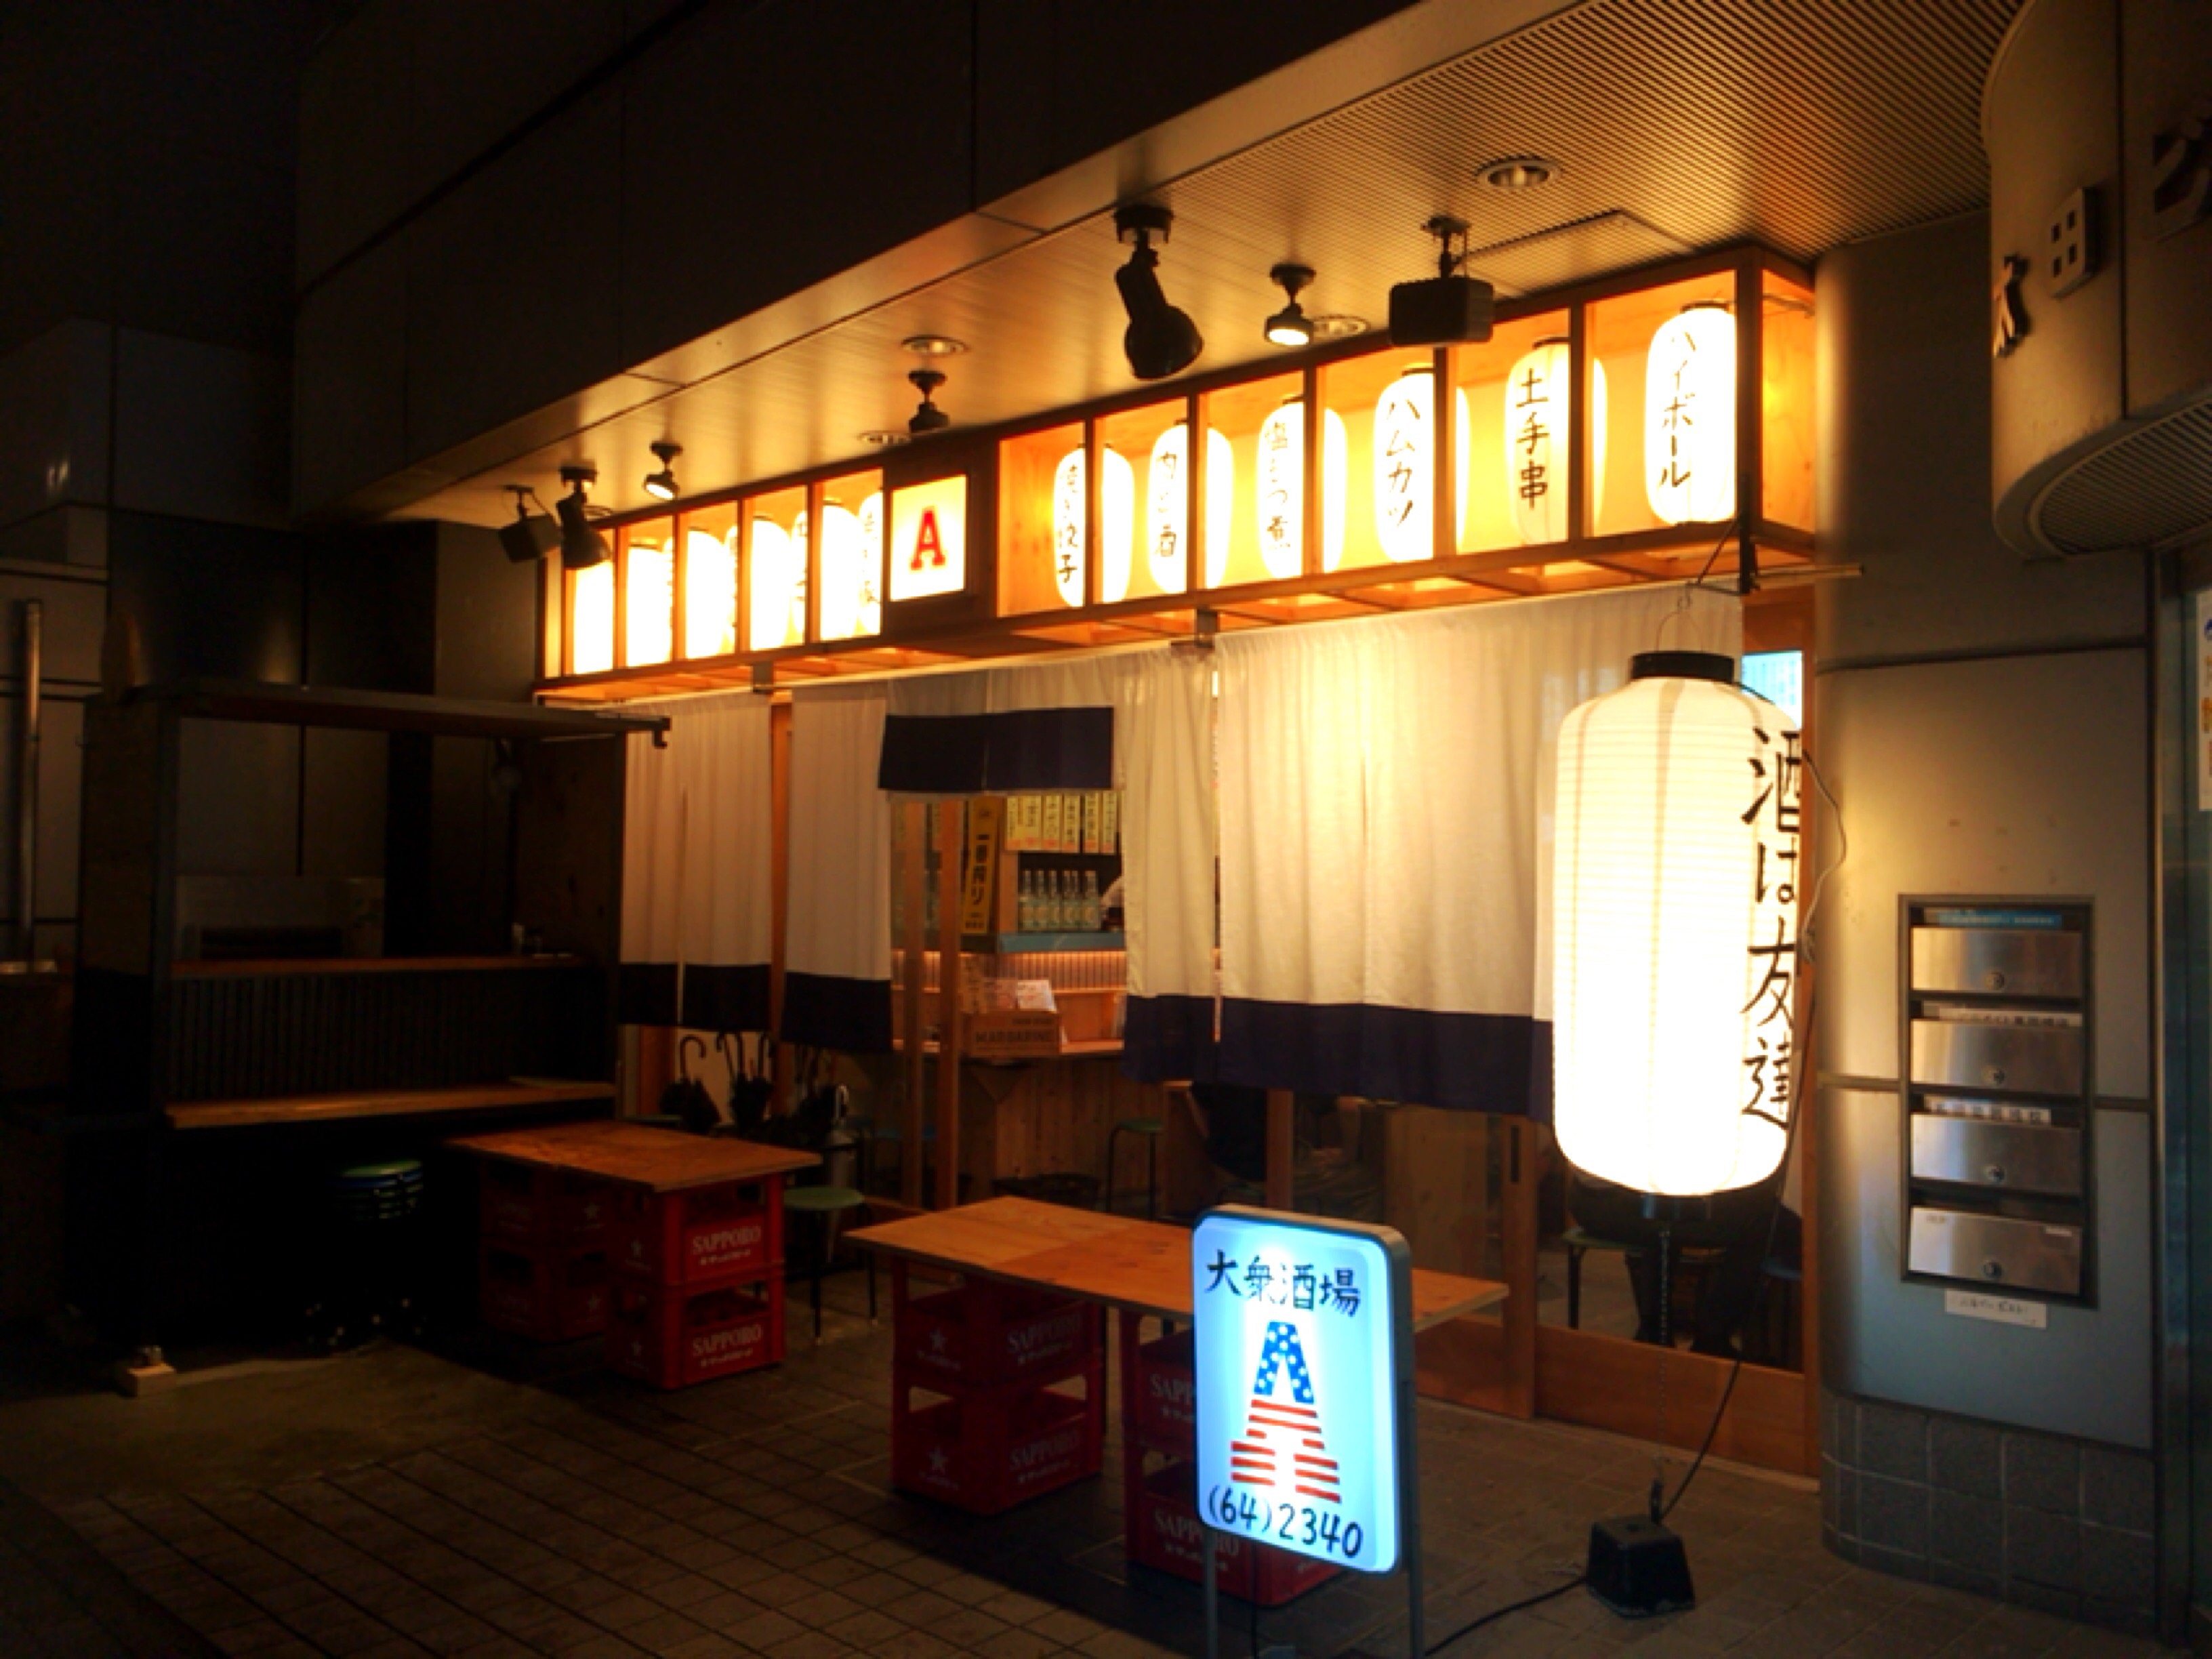 東岡崎のアメリカ 最近openした大衆居酒屋 賑やかな雰囲気でコスパ良いです 岡崎にゅーす